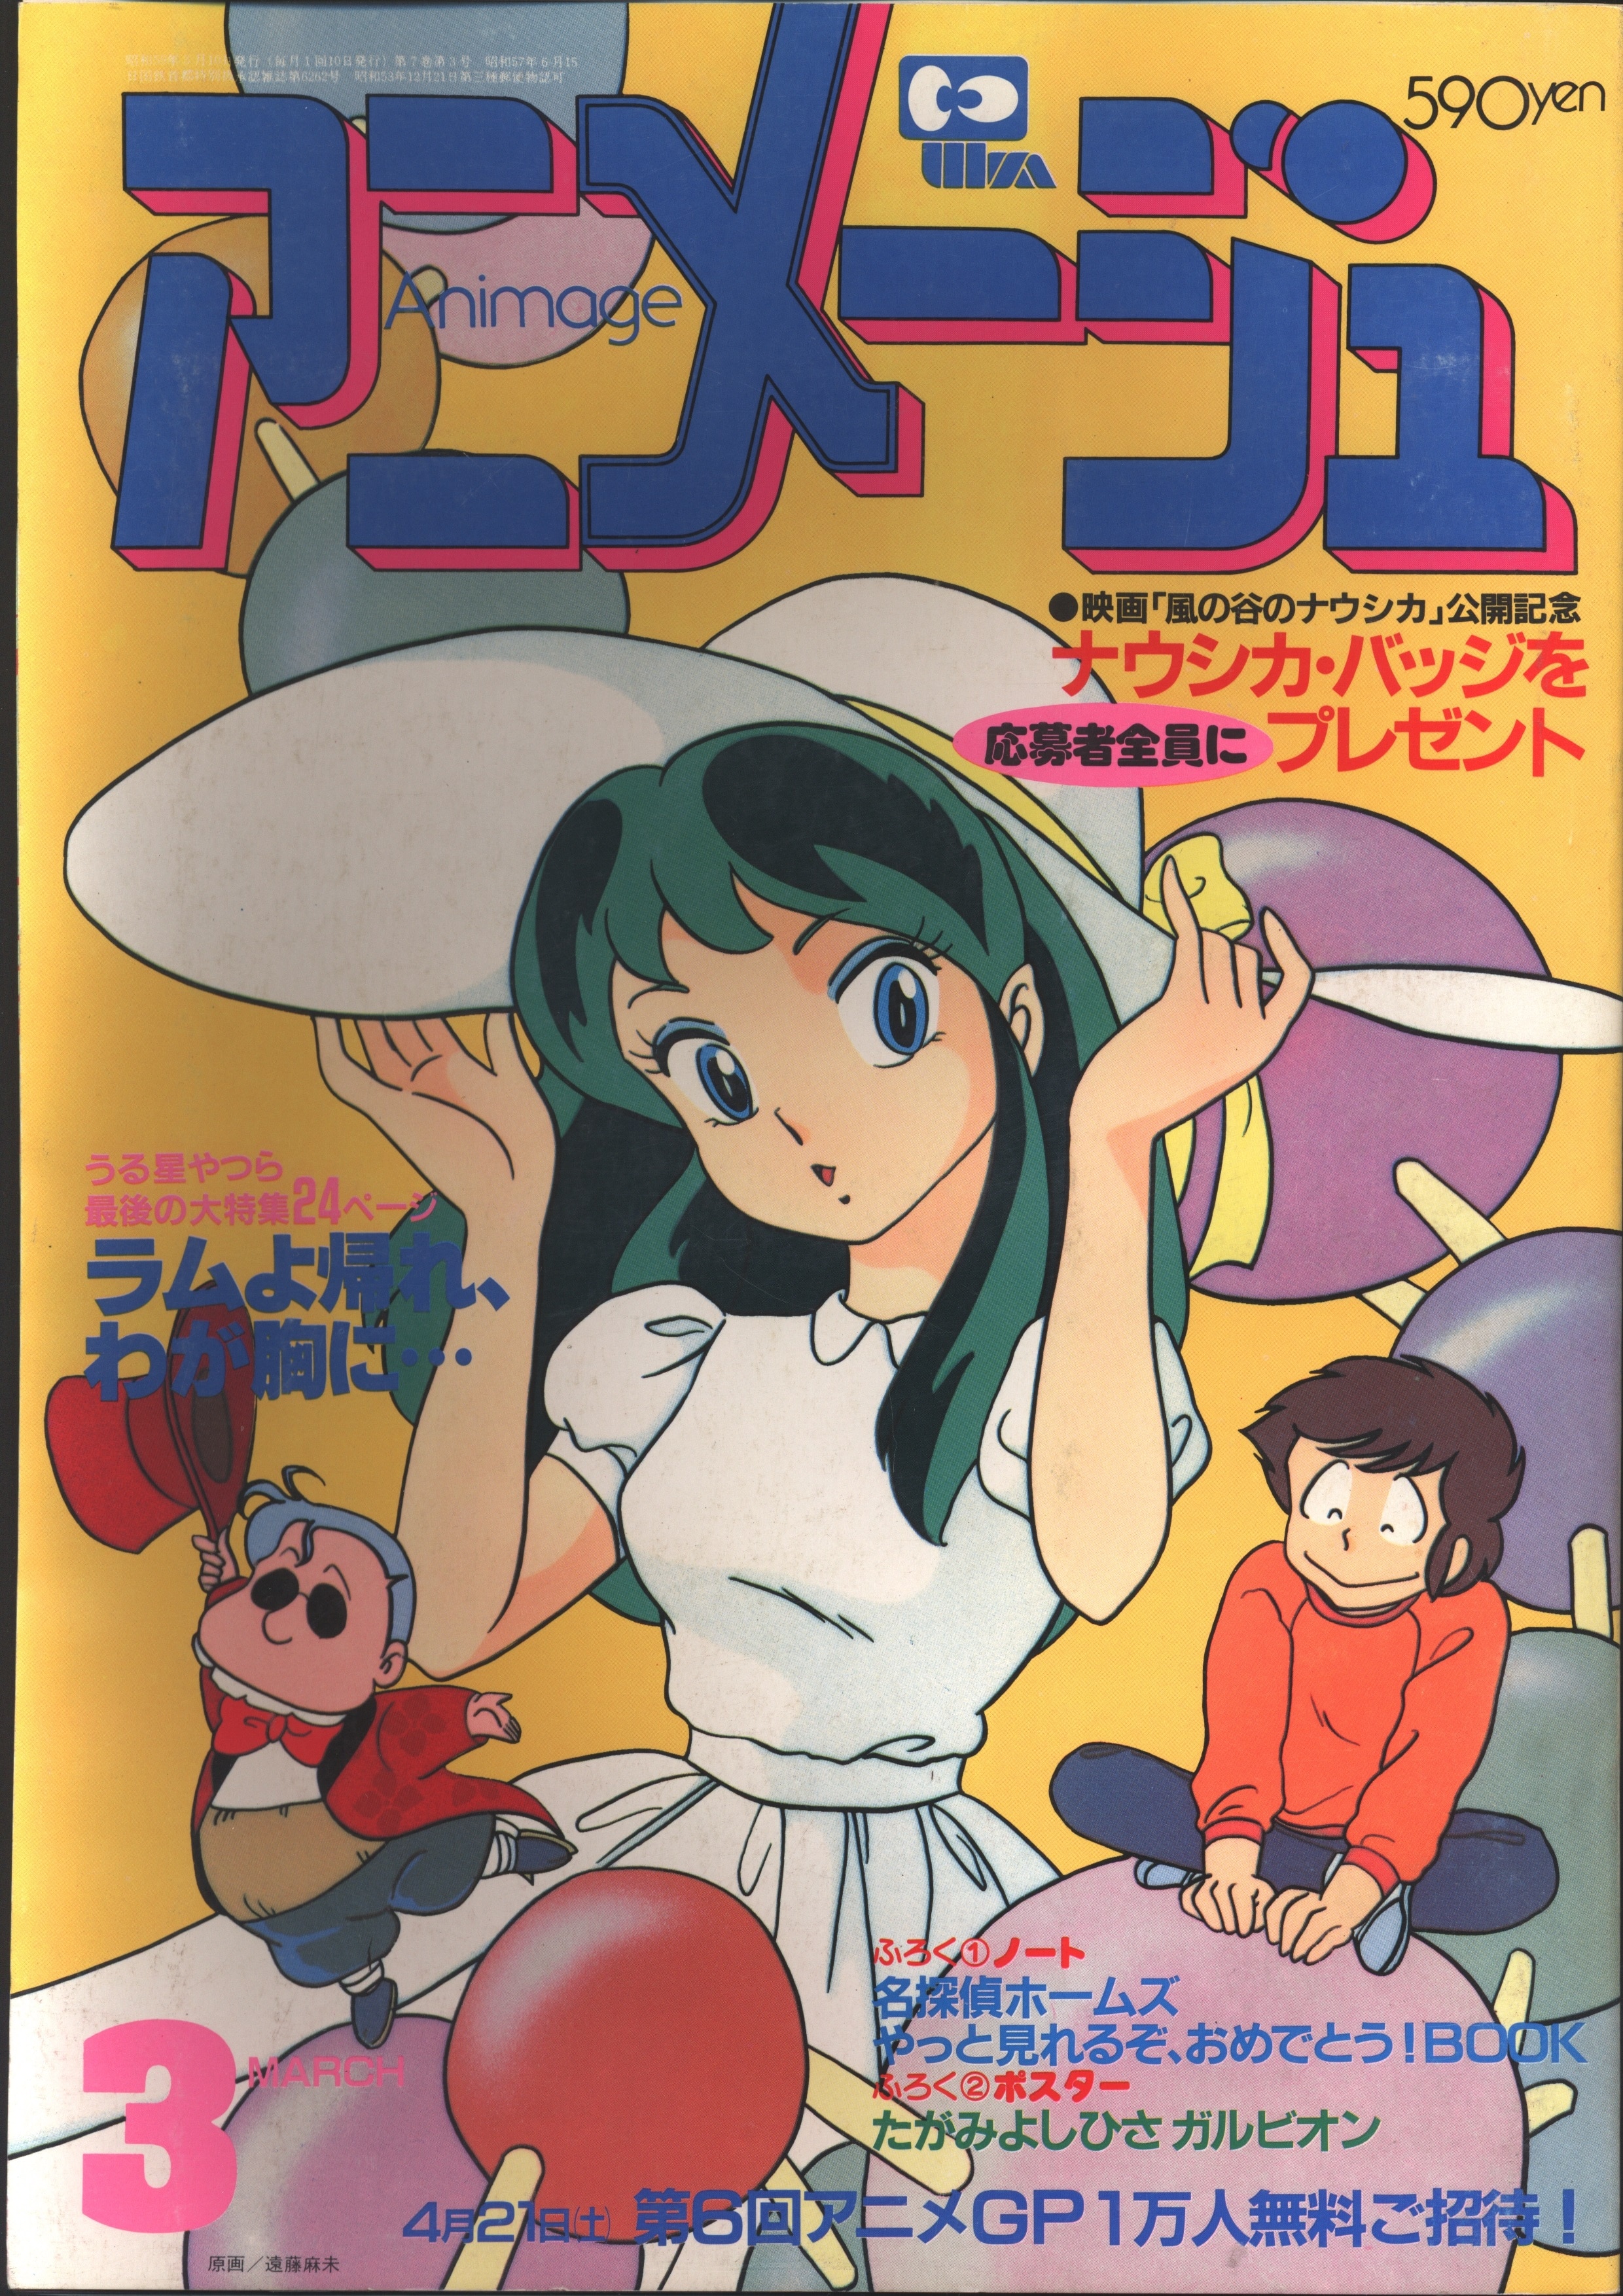 徳間書店 1984年(昭和59年)のアニメ雑誌 本誌のみ アニメージュ1984年 